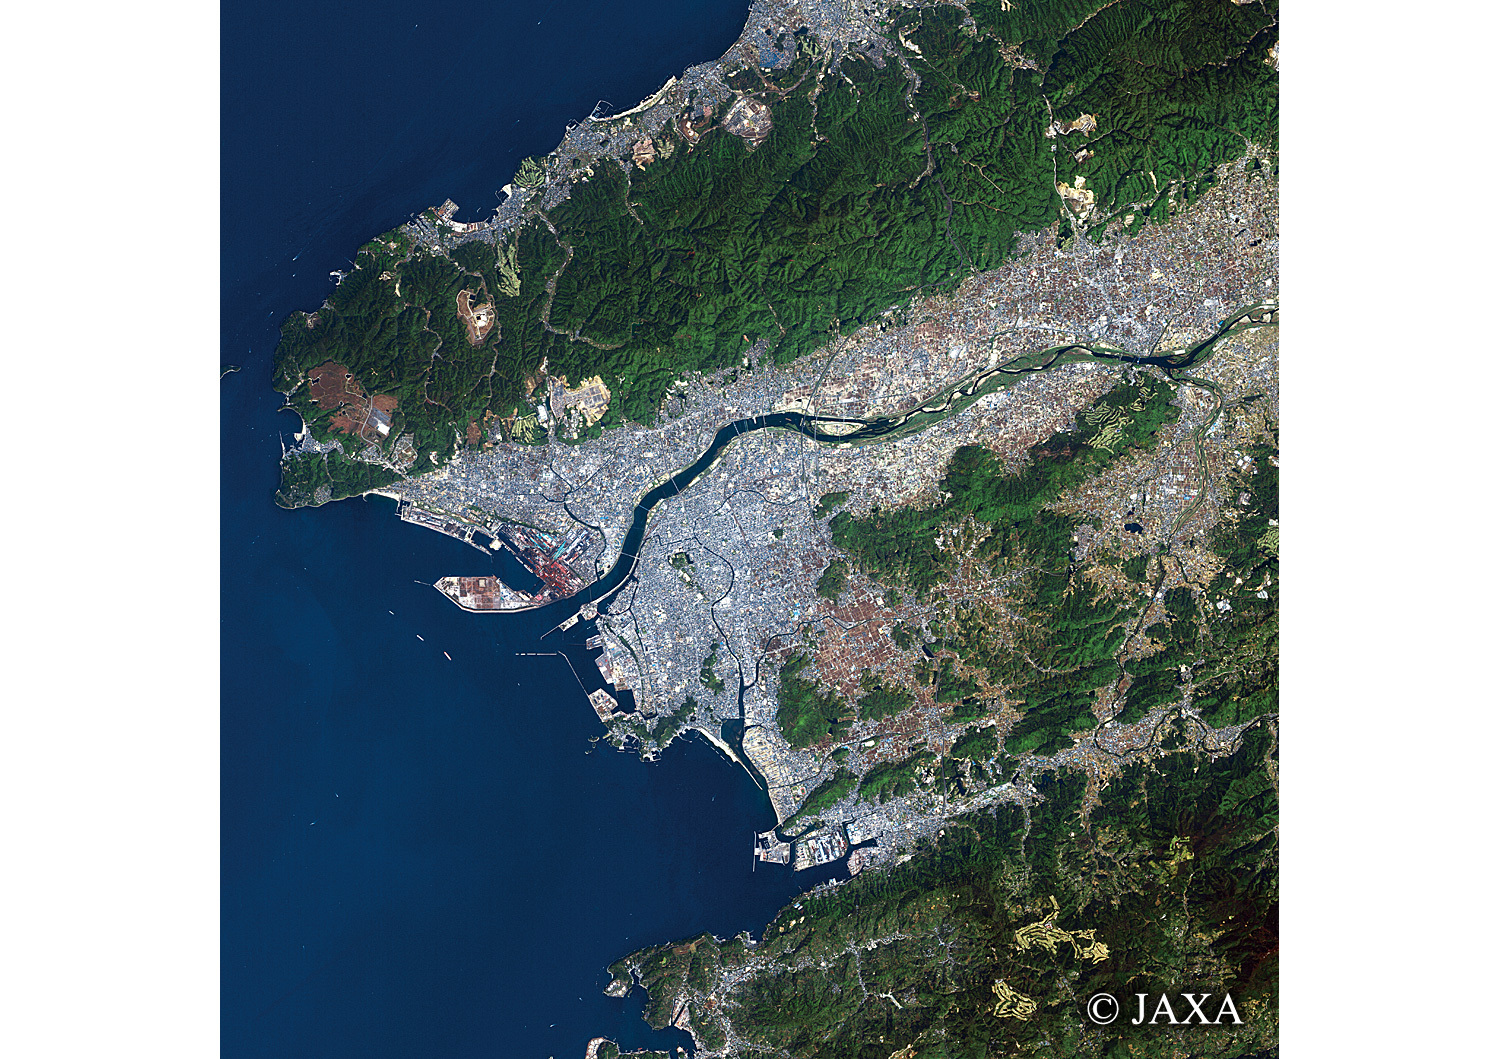 だいちから見た日本の都市 和歌山市:衛星画像